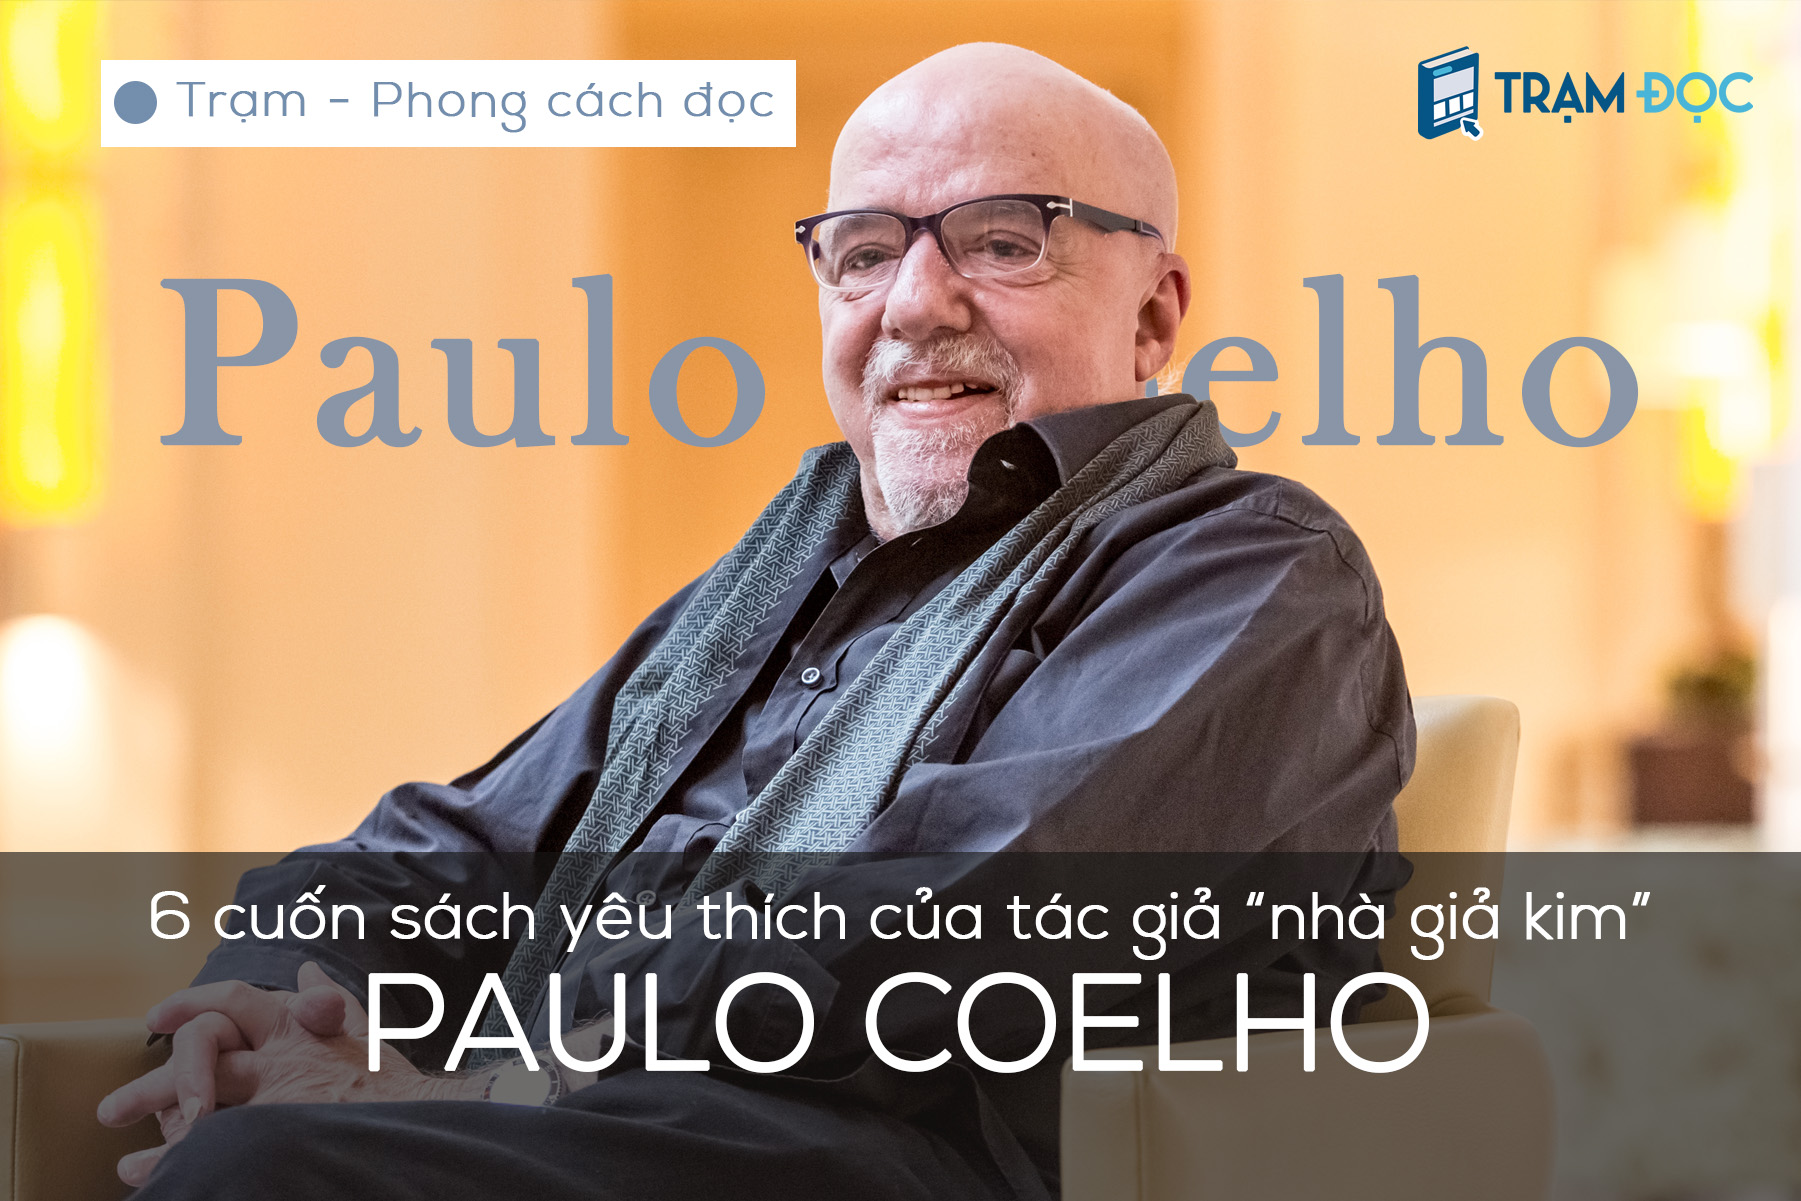 6 cuốn sách yêu thích nhất của Paulo Coelho